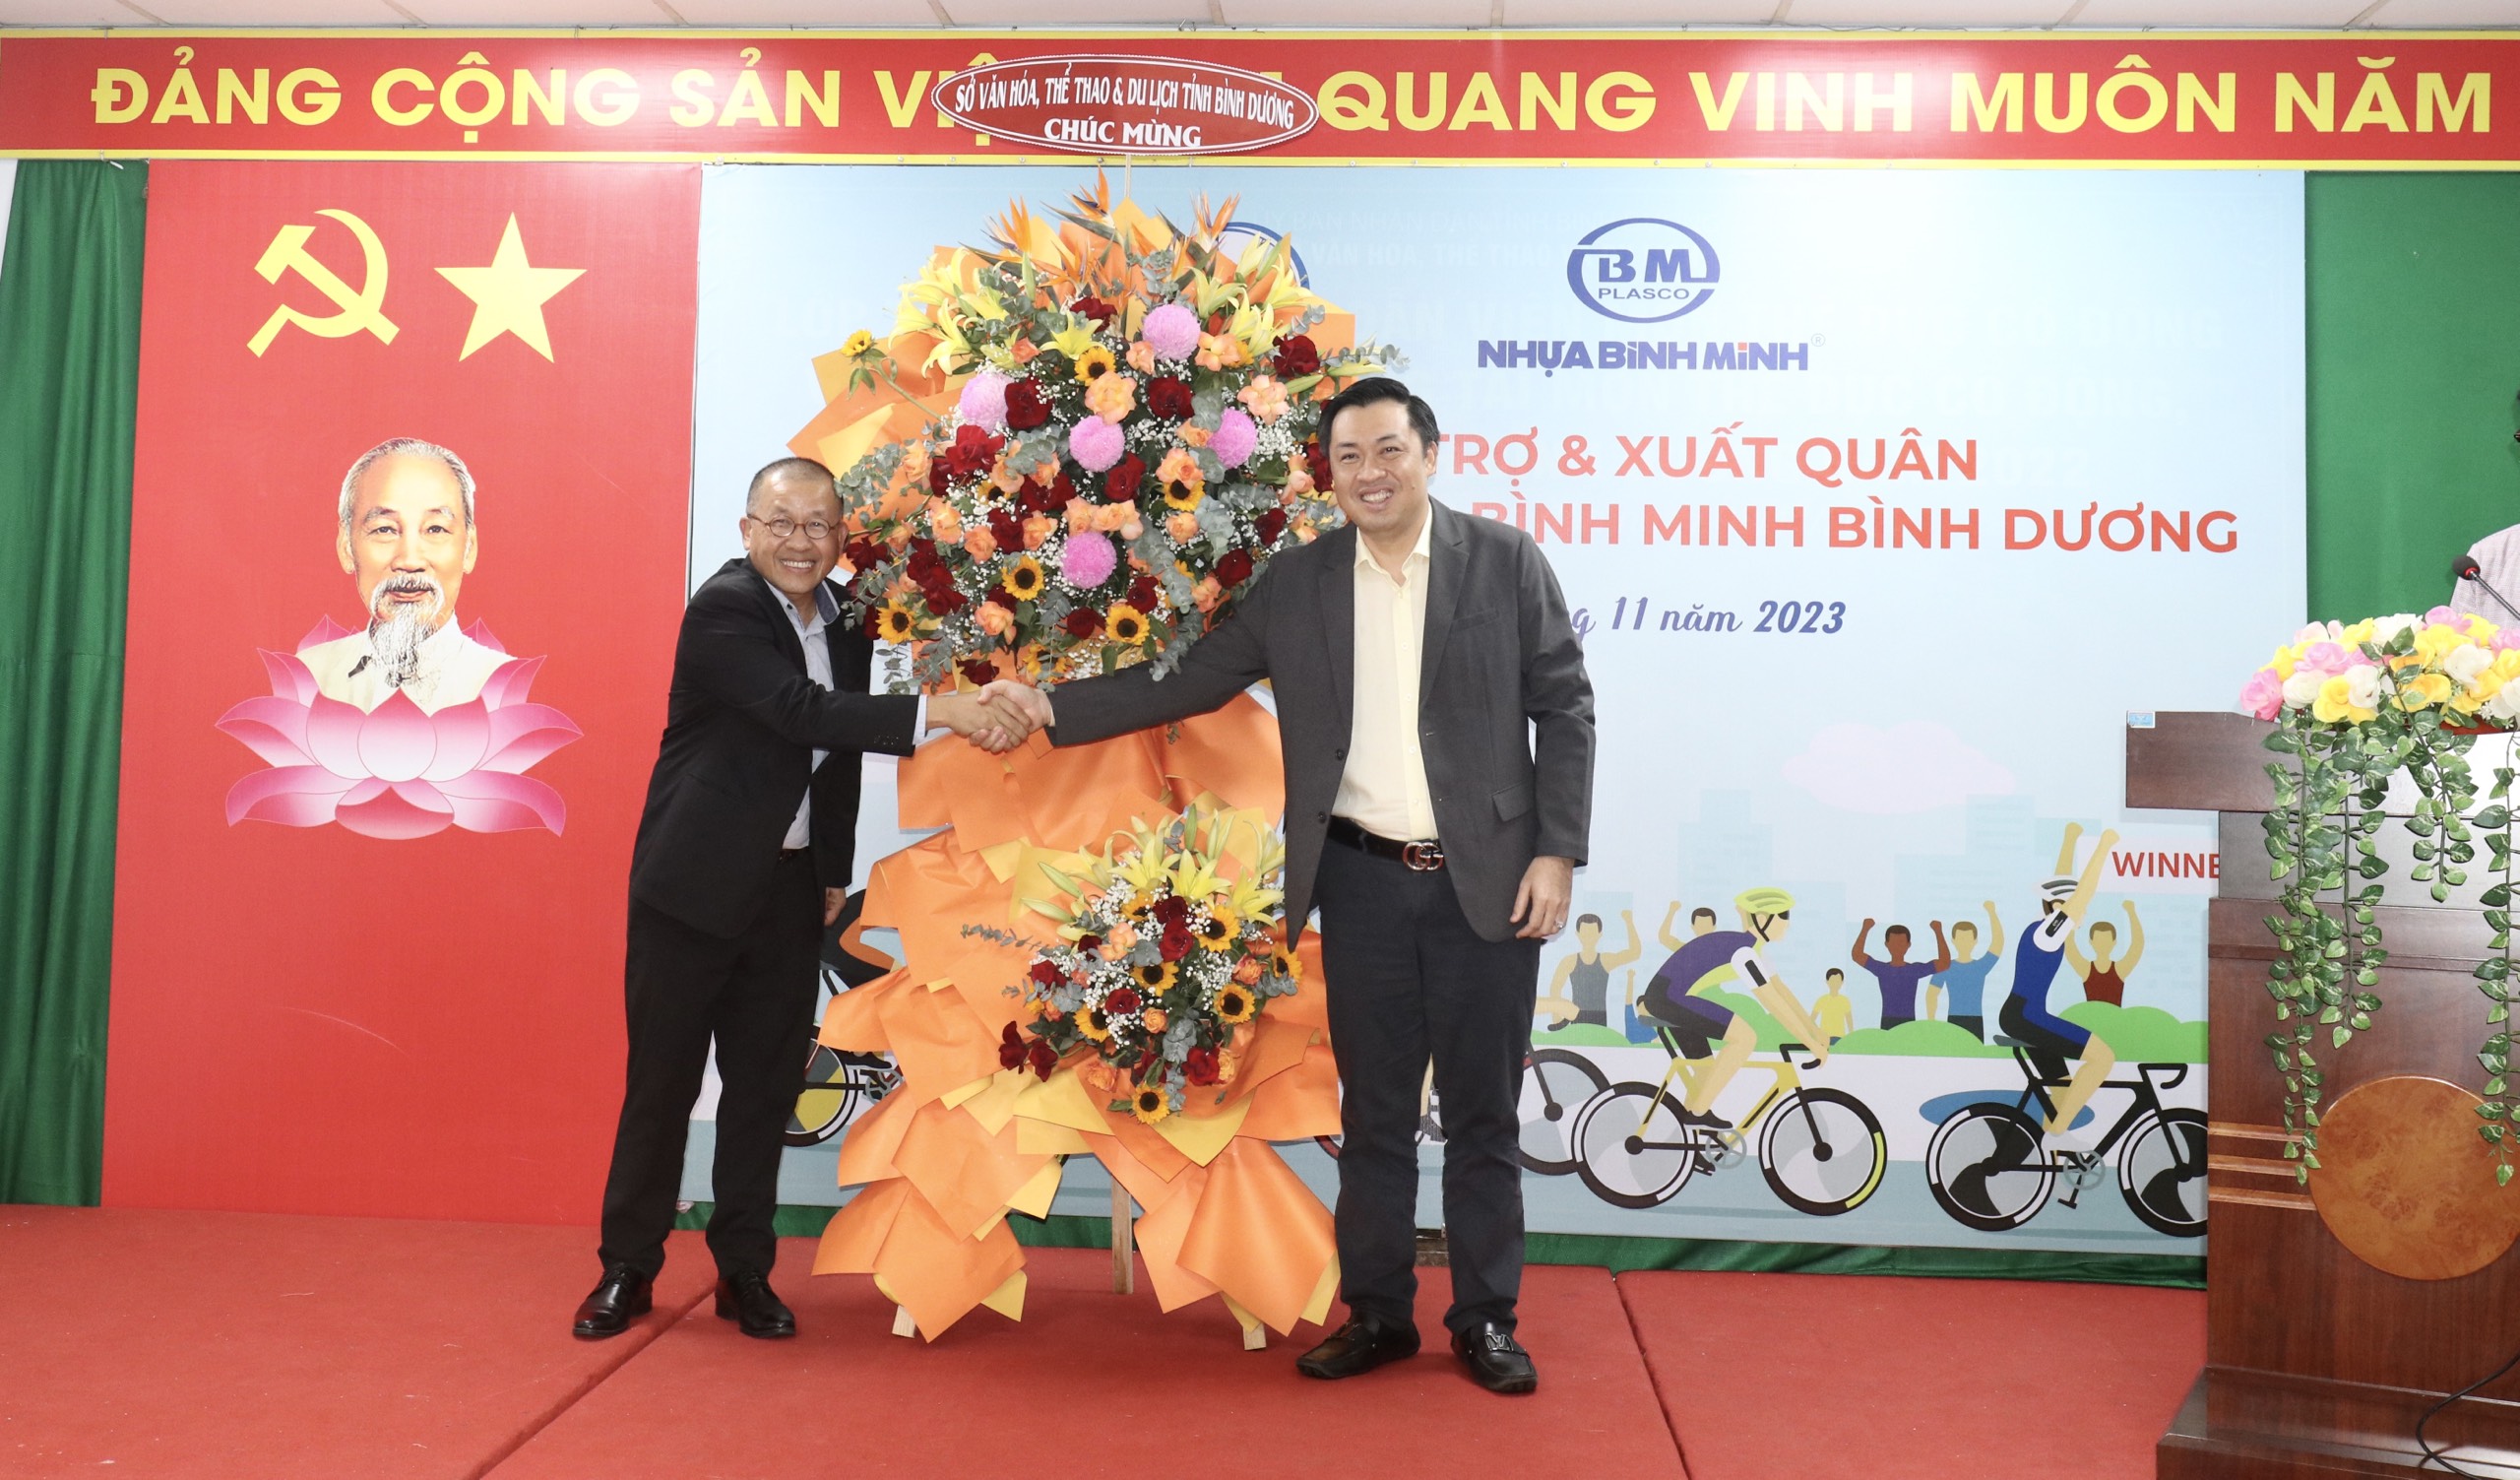 Ông Cao Văn Chóng (bên phải) – Phó Giám đốc Sở Văn hoá, Thể thao và Du lịch tỉnh Bình Dương tặng hoa cảm ơn đại diện nhà tài trợ, ông Chaowalit Treejak (bên trái) - Tổng Giám đốc Công ty Nhựa Bình Minh